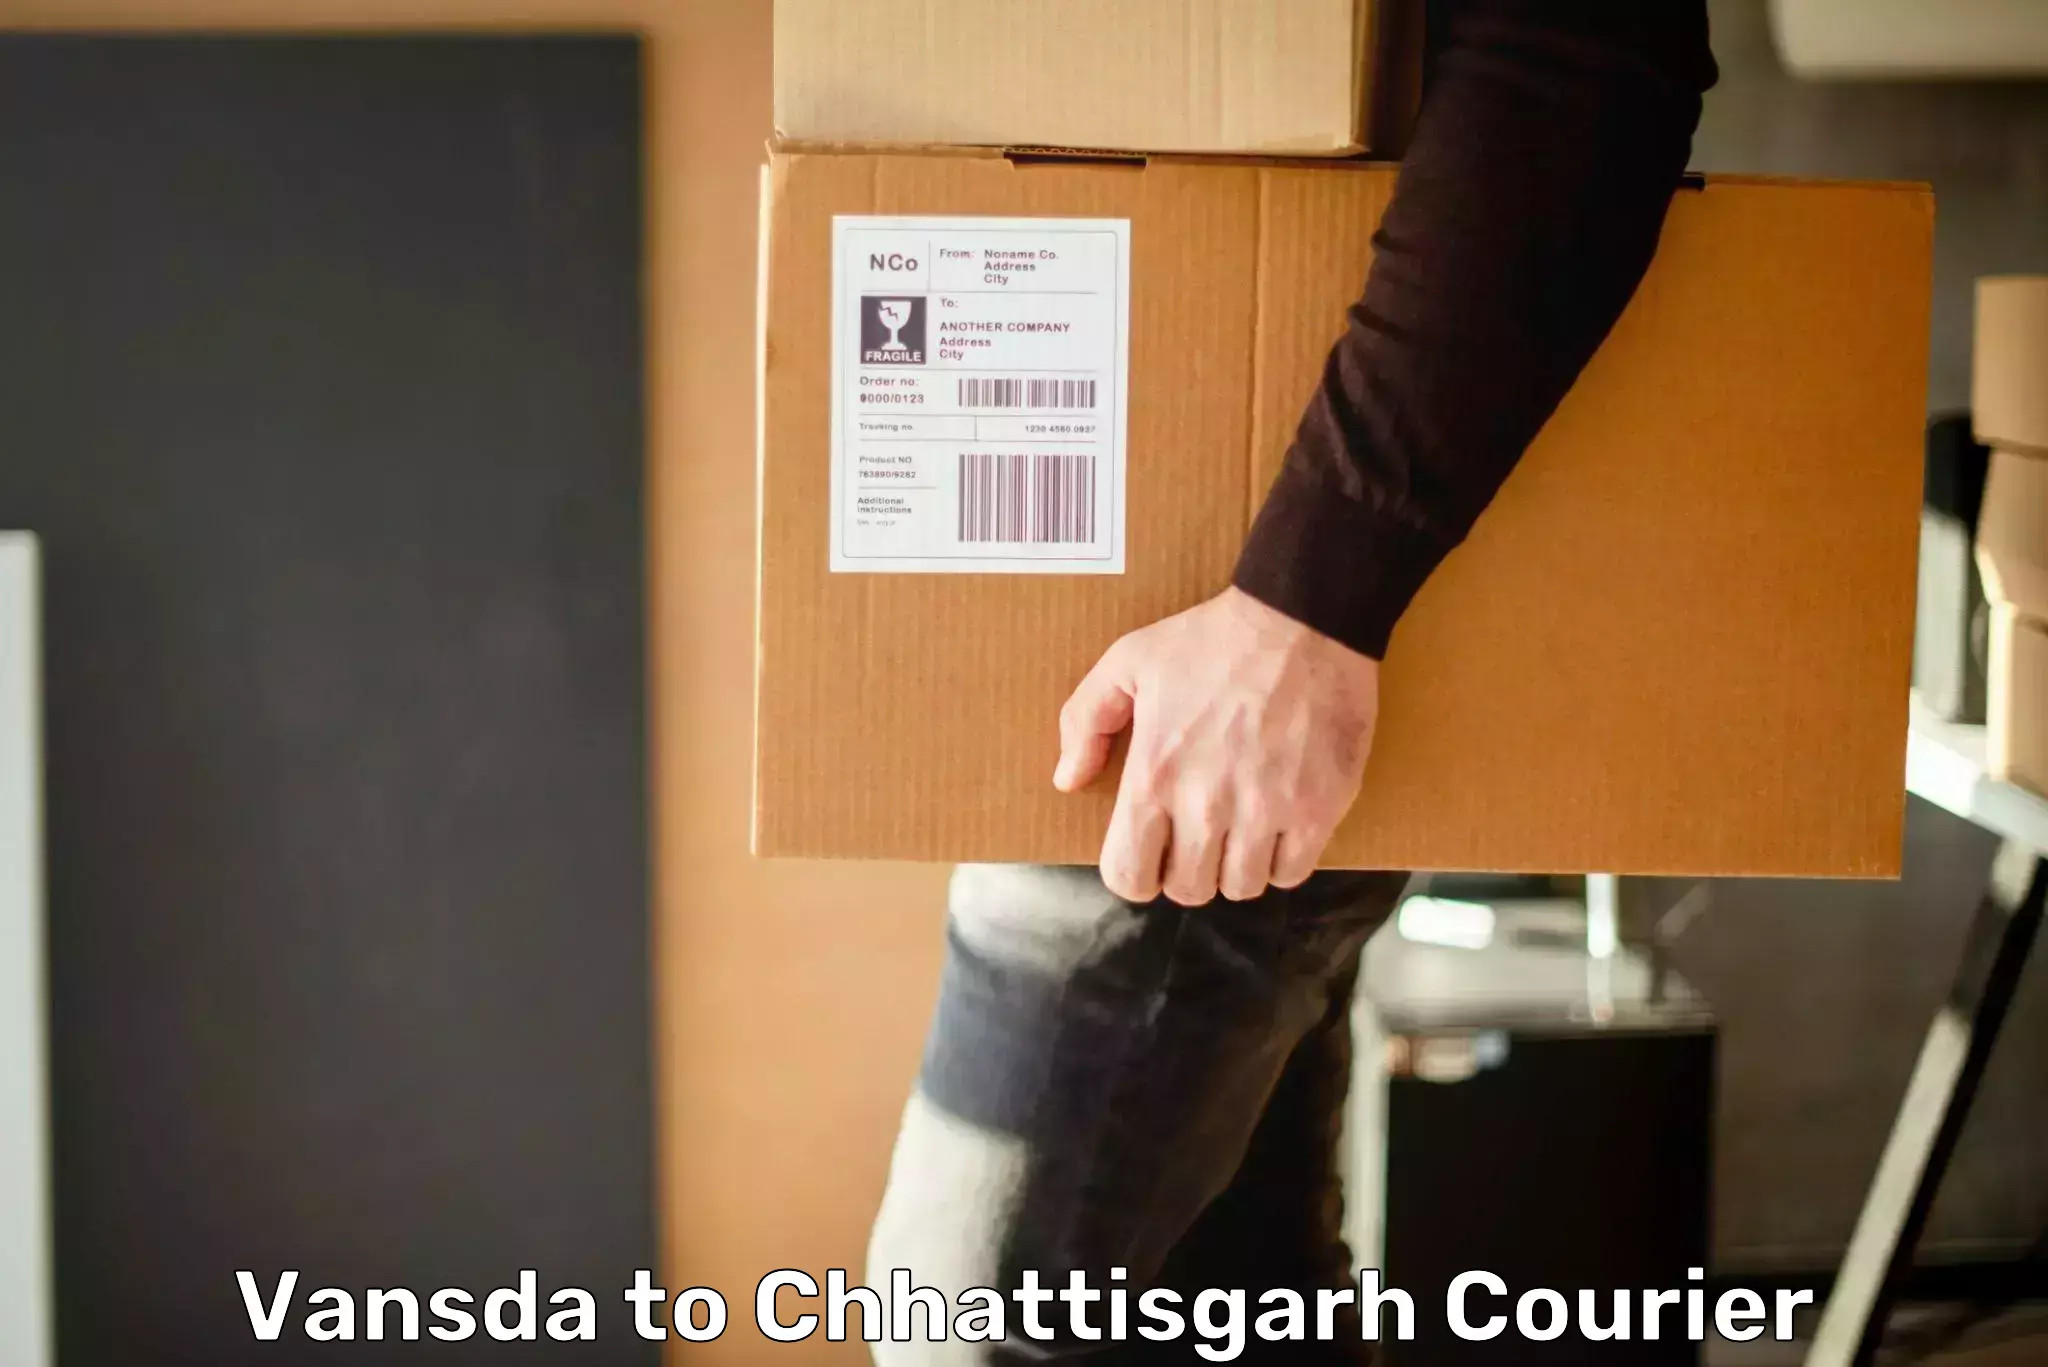 Personalized courier experiences Vansda to Korea Chhattisgarh